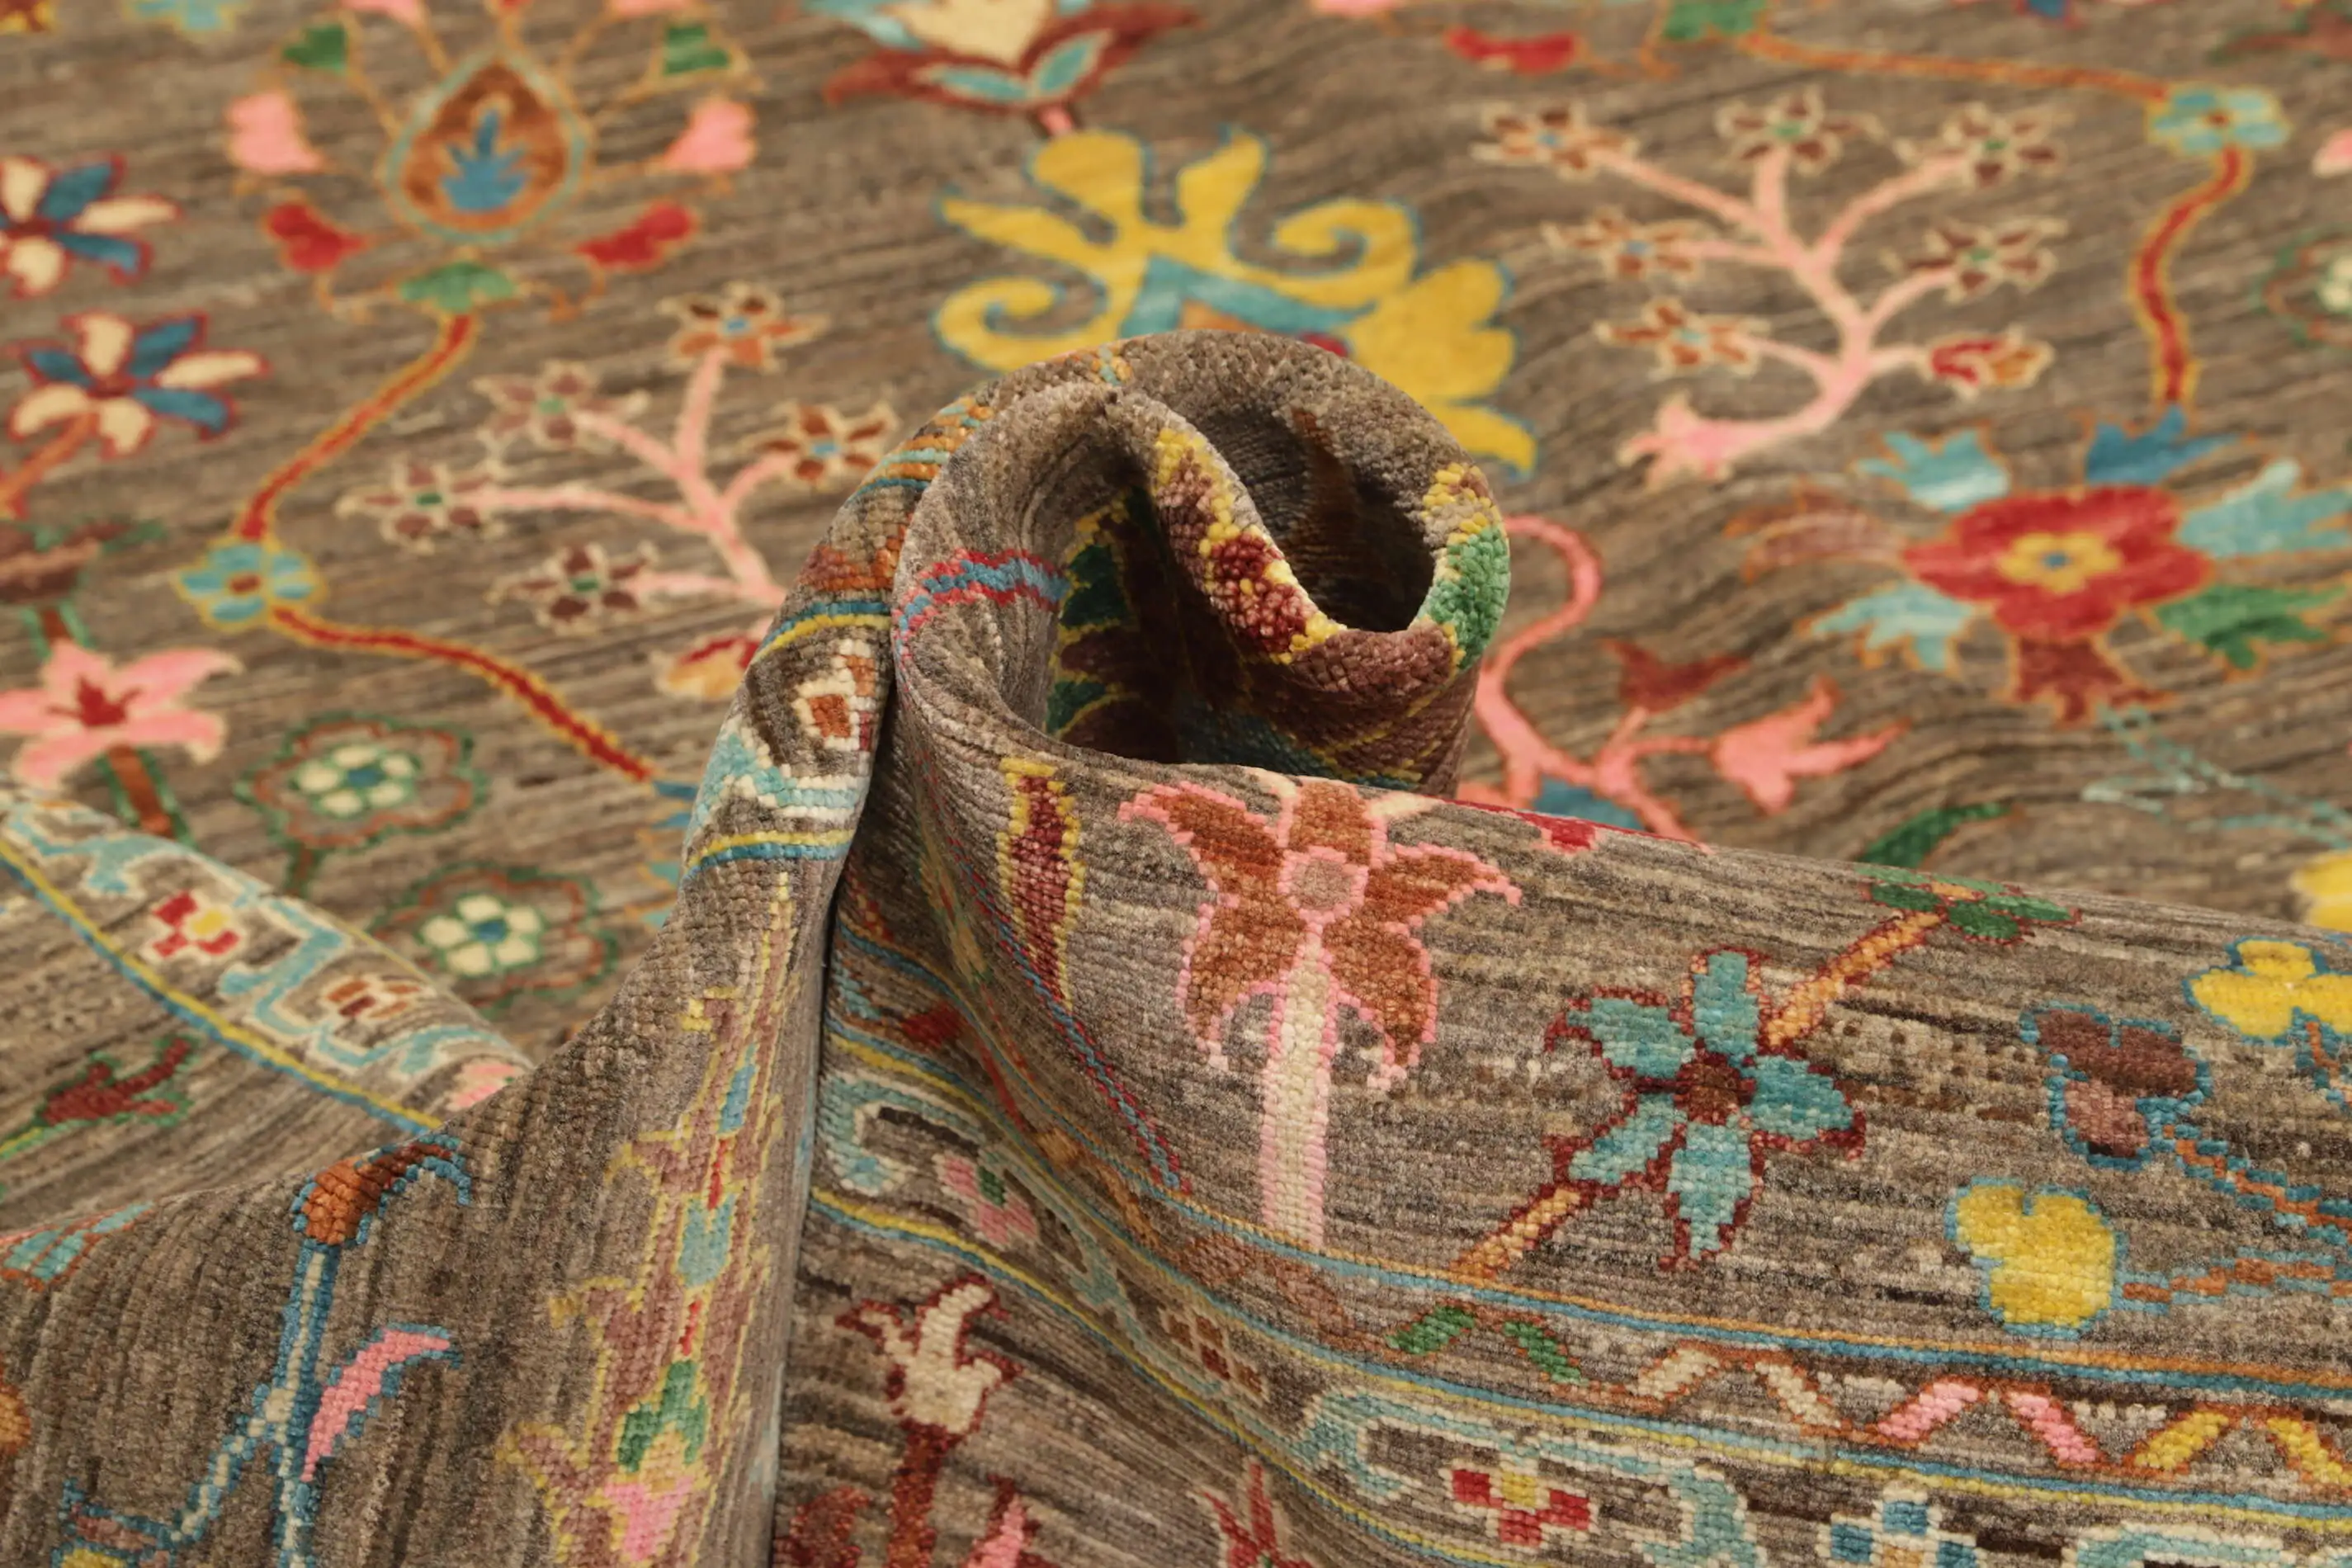 Ziegler Teppich 244x309 cm Orientteppich bunt Handgeknüpft Wolle